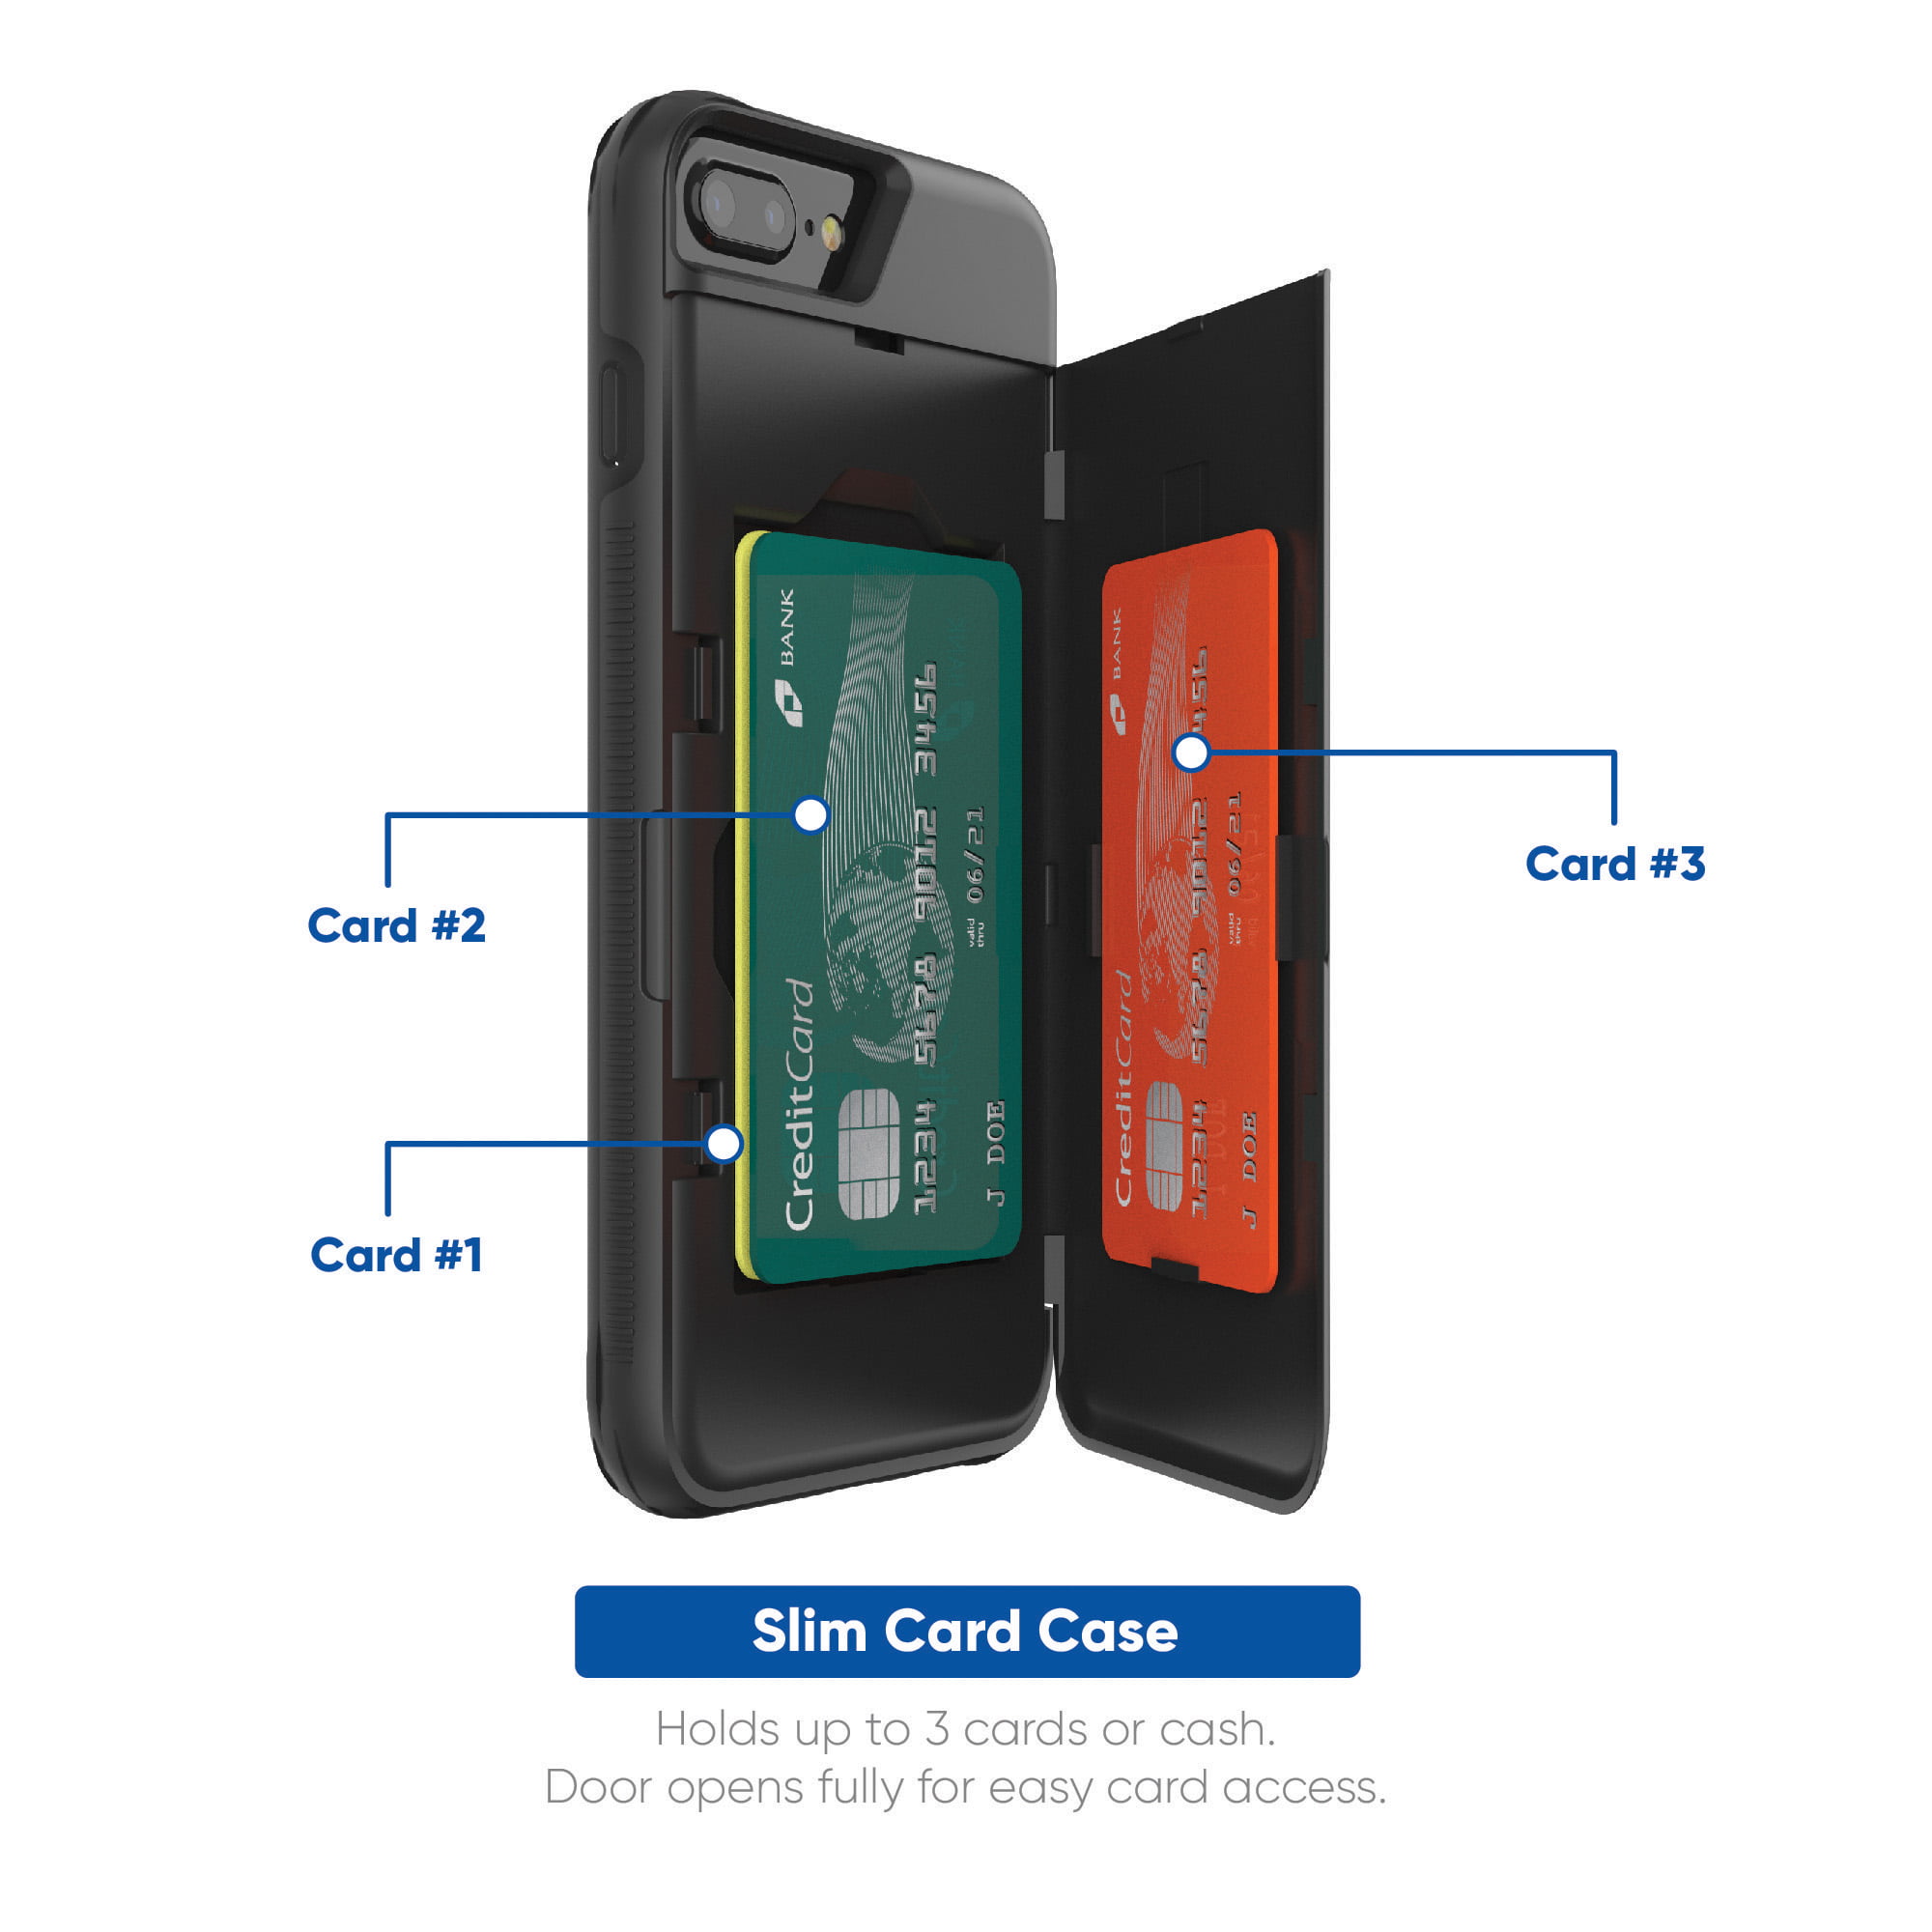 スマートフォン/携帯電話 スマートフォン本体 onn. Slim Card Case for iPhone 6, iPhone 6s, iPhone 7, iPhone 8 